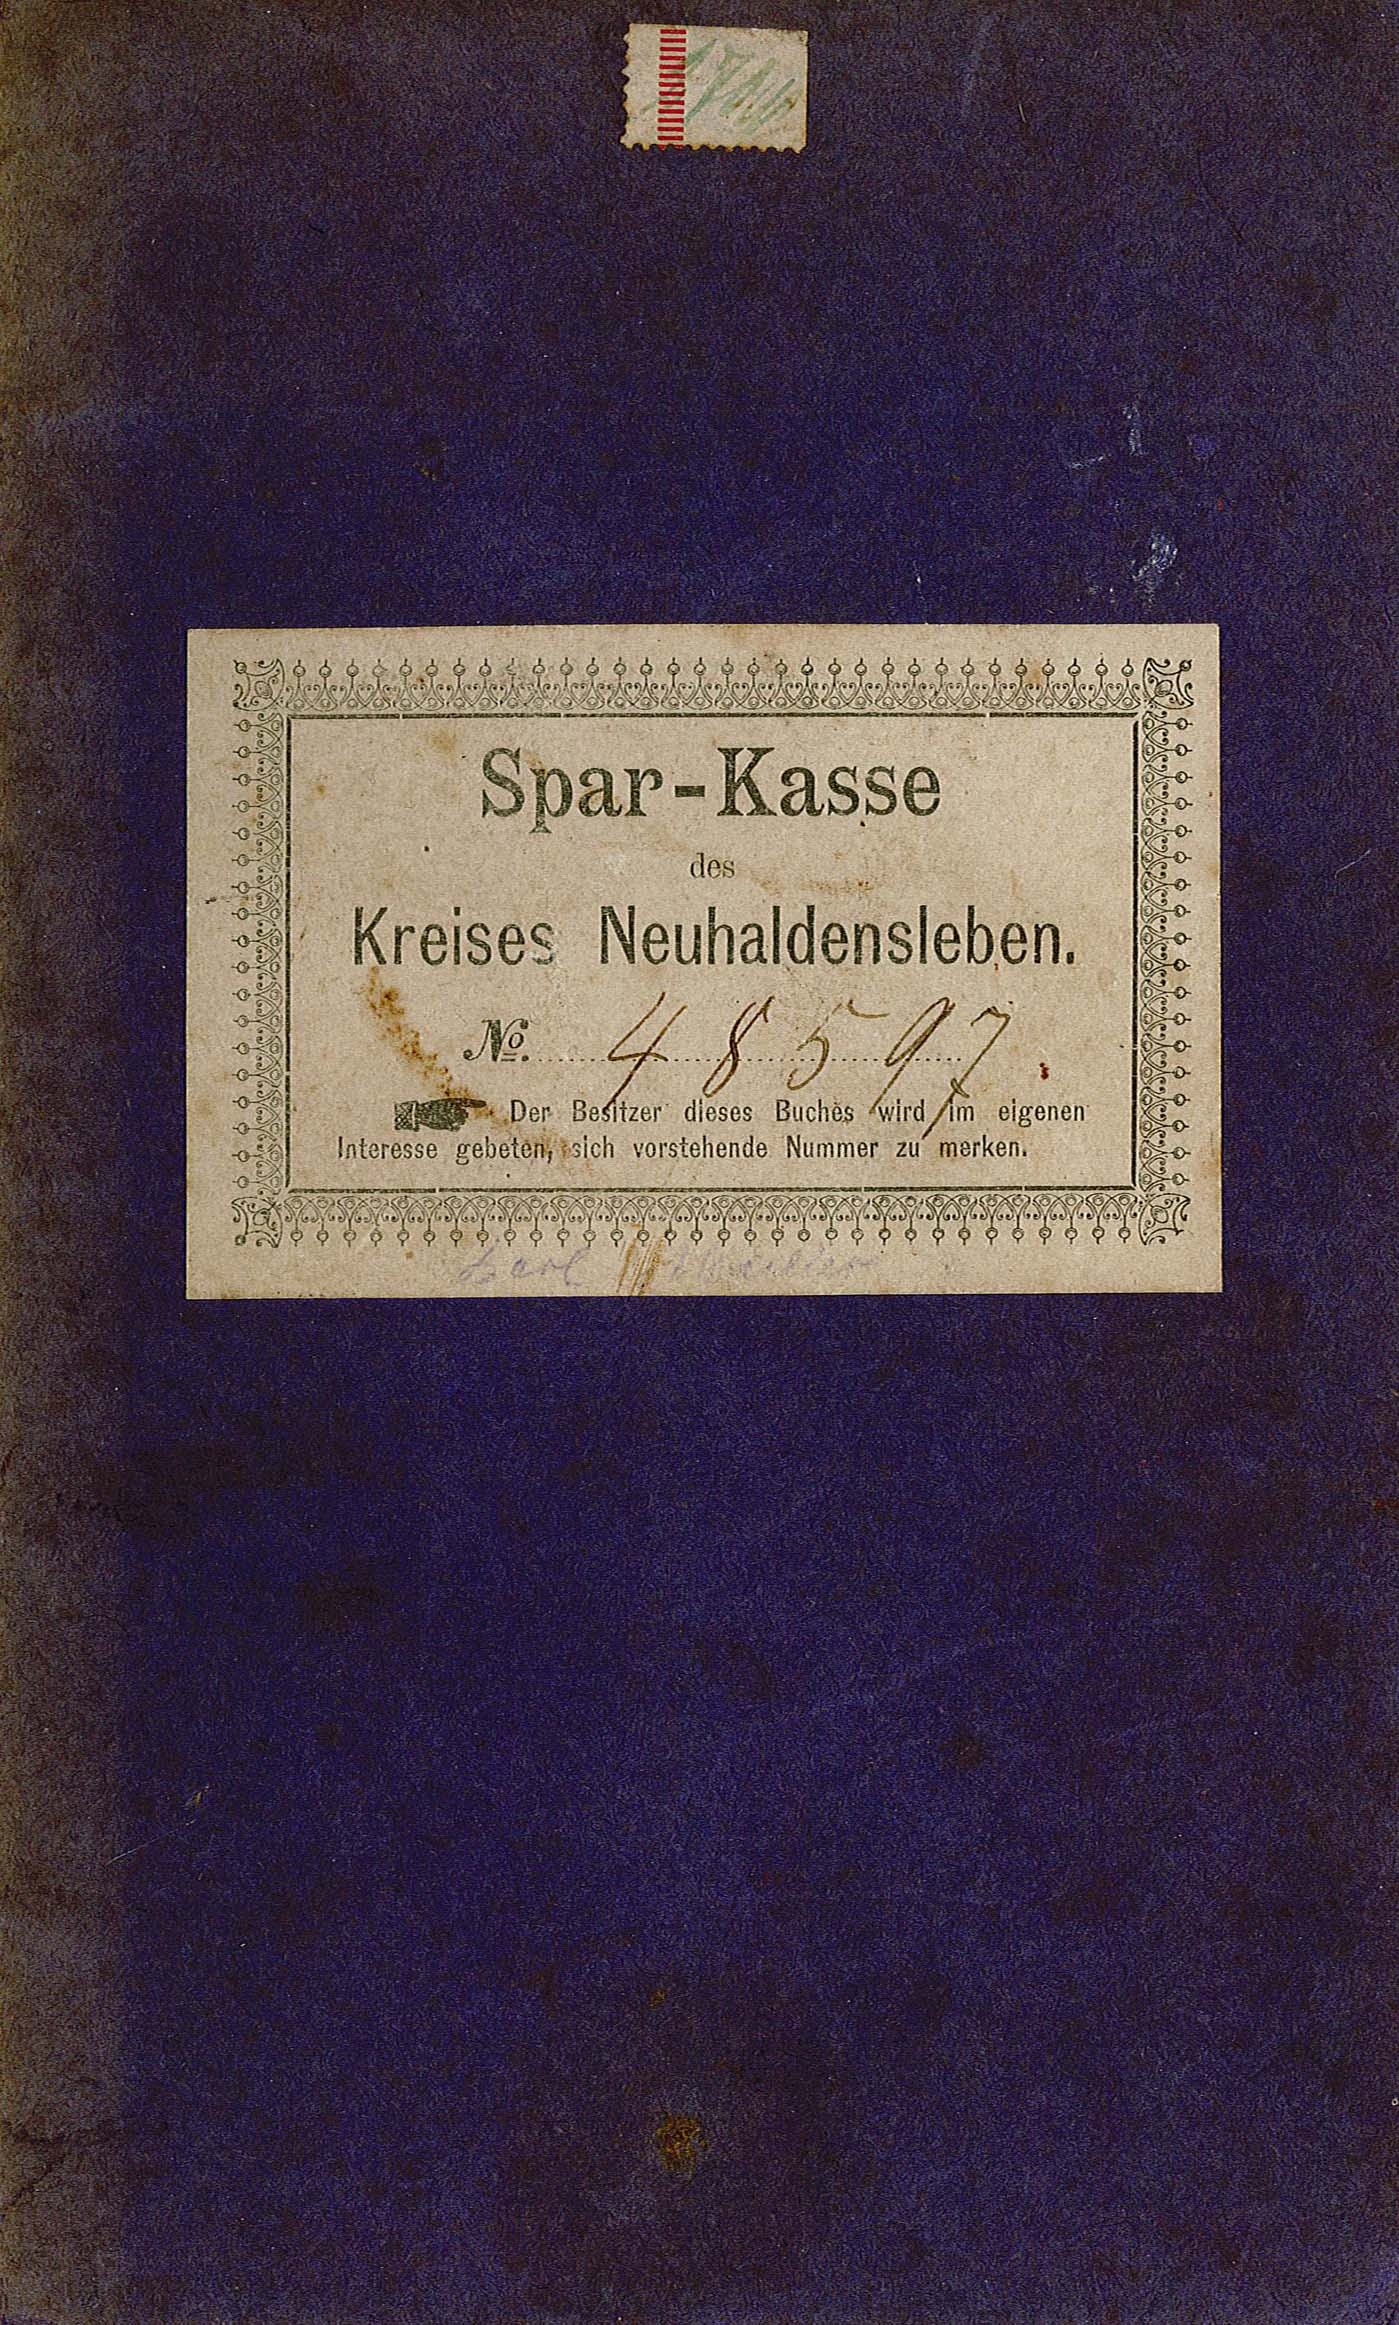 Sparkassenbuch von Karl Müller, 1905-1920 (Museum Wolmirstedt RR-F)